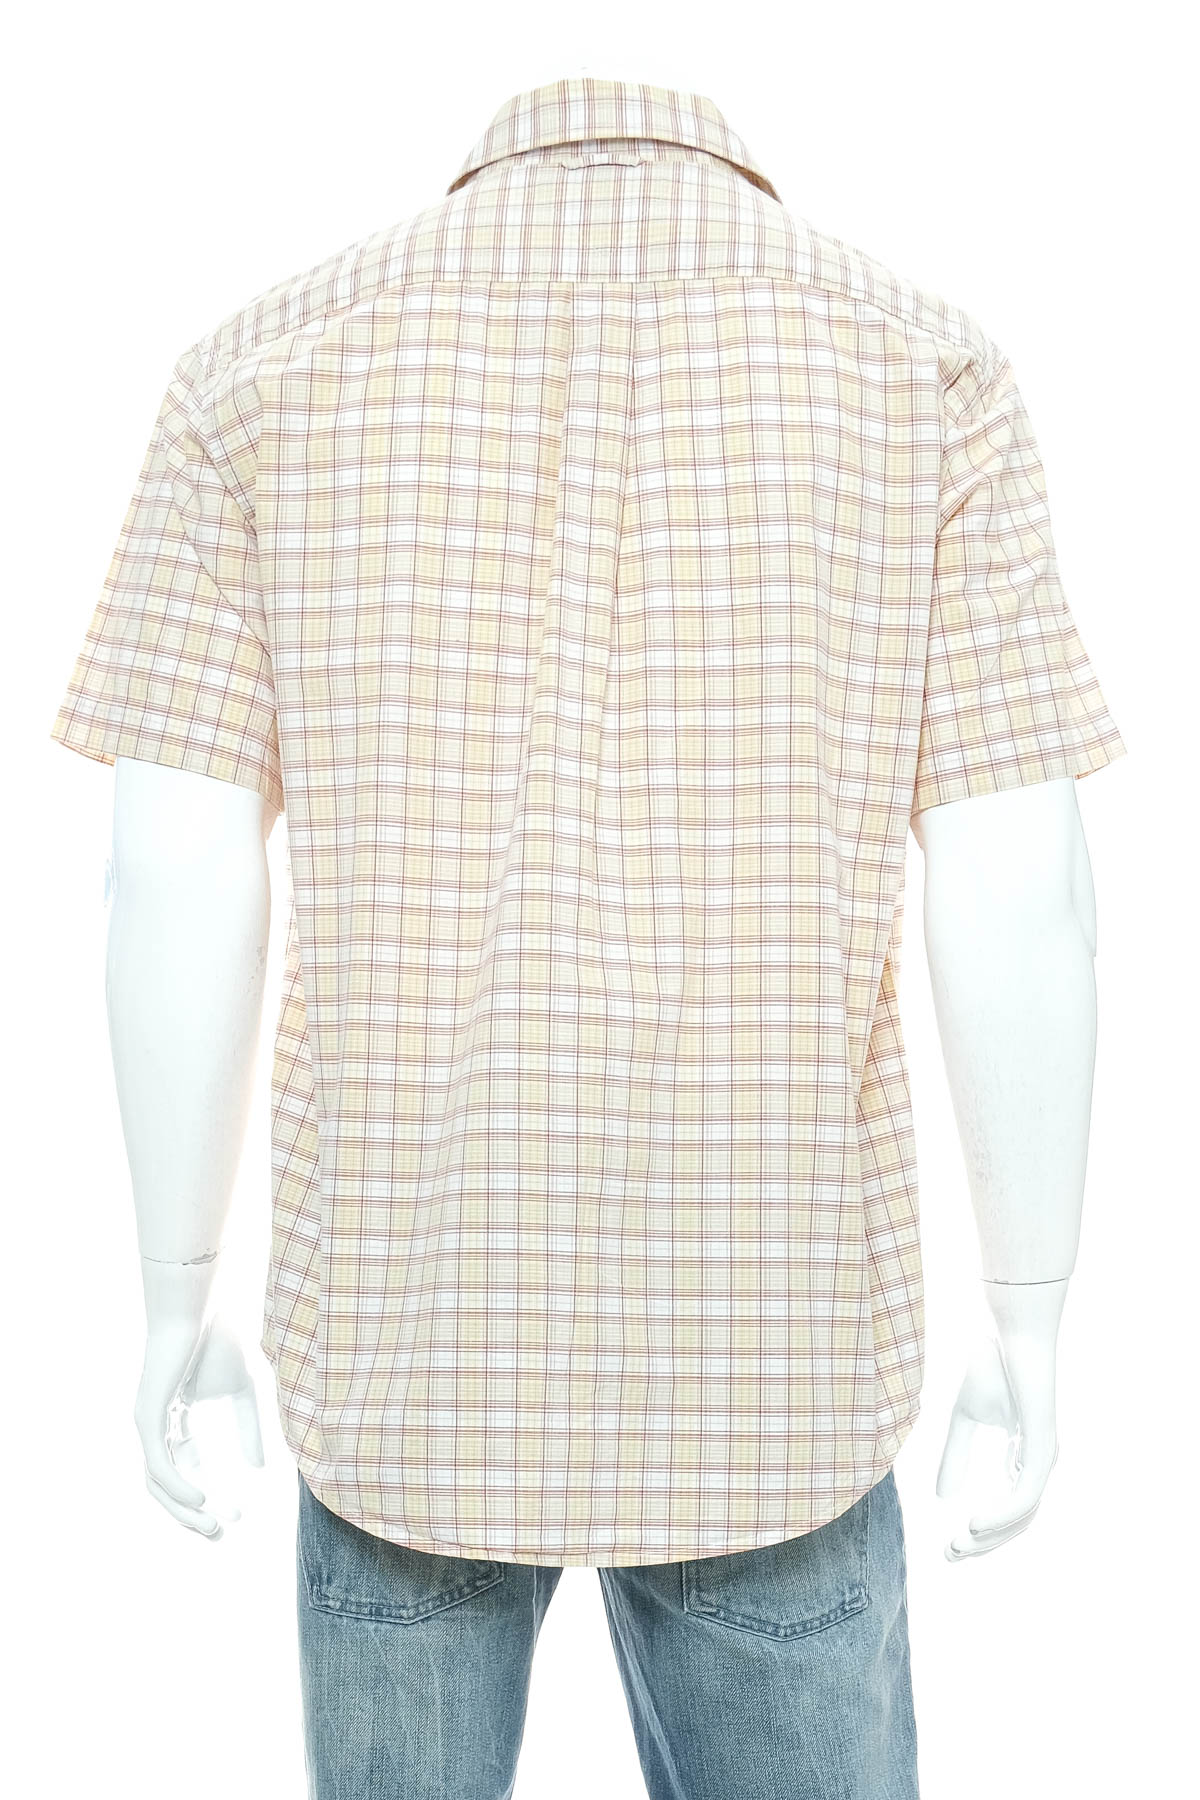 Men's shirt - TOMMY HILFIGER - 1